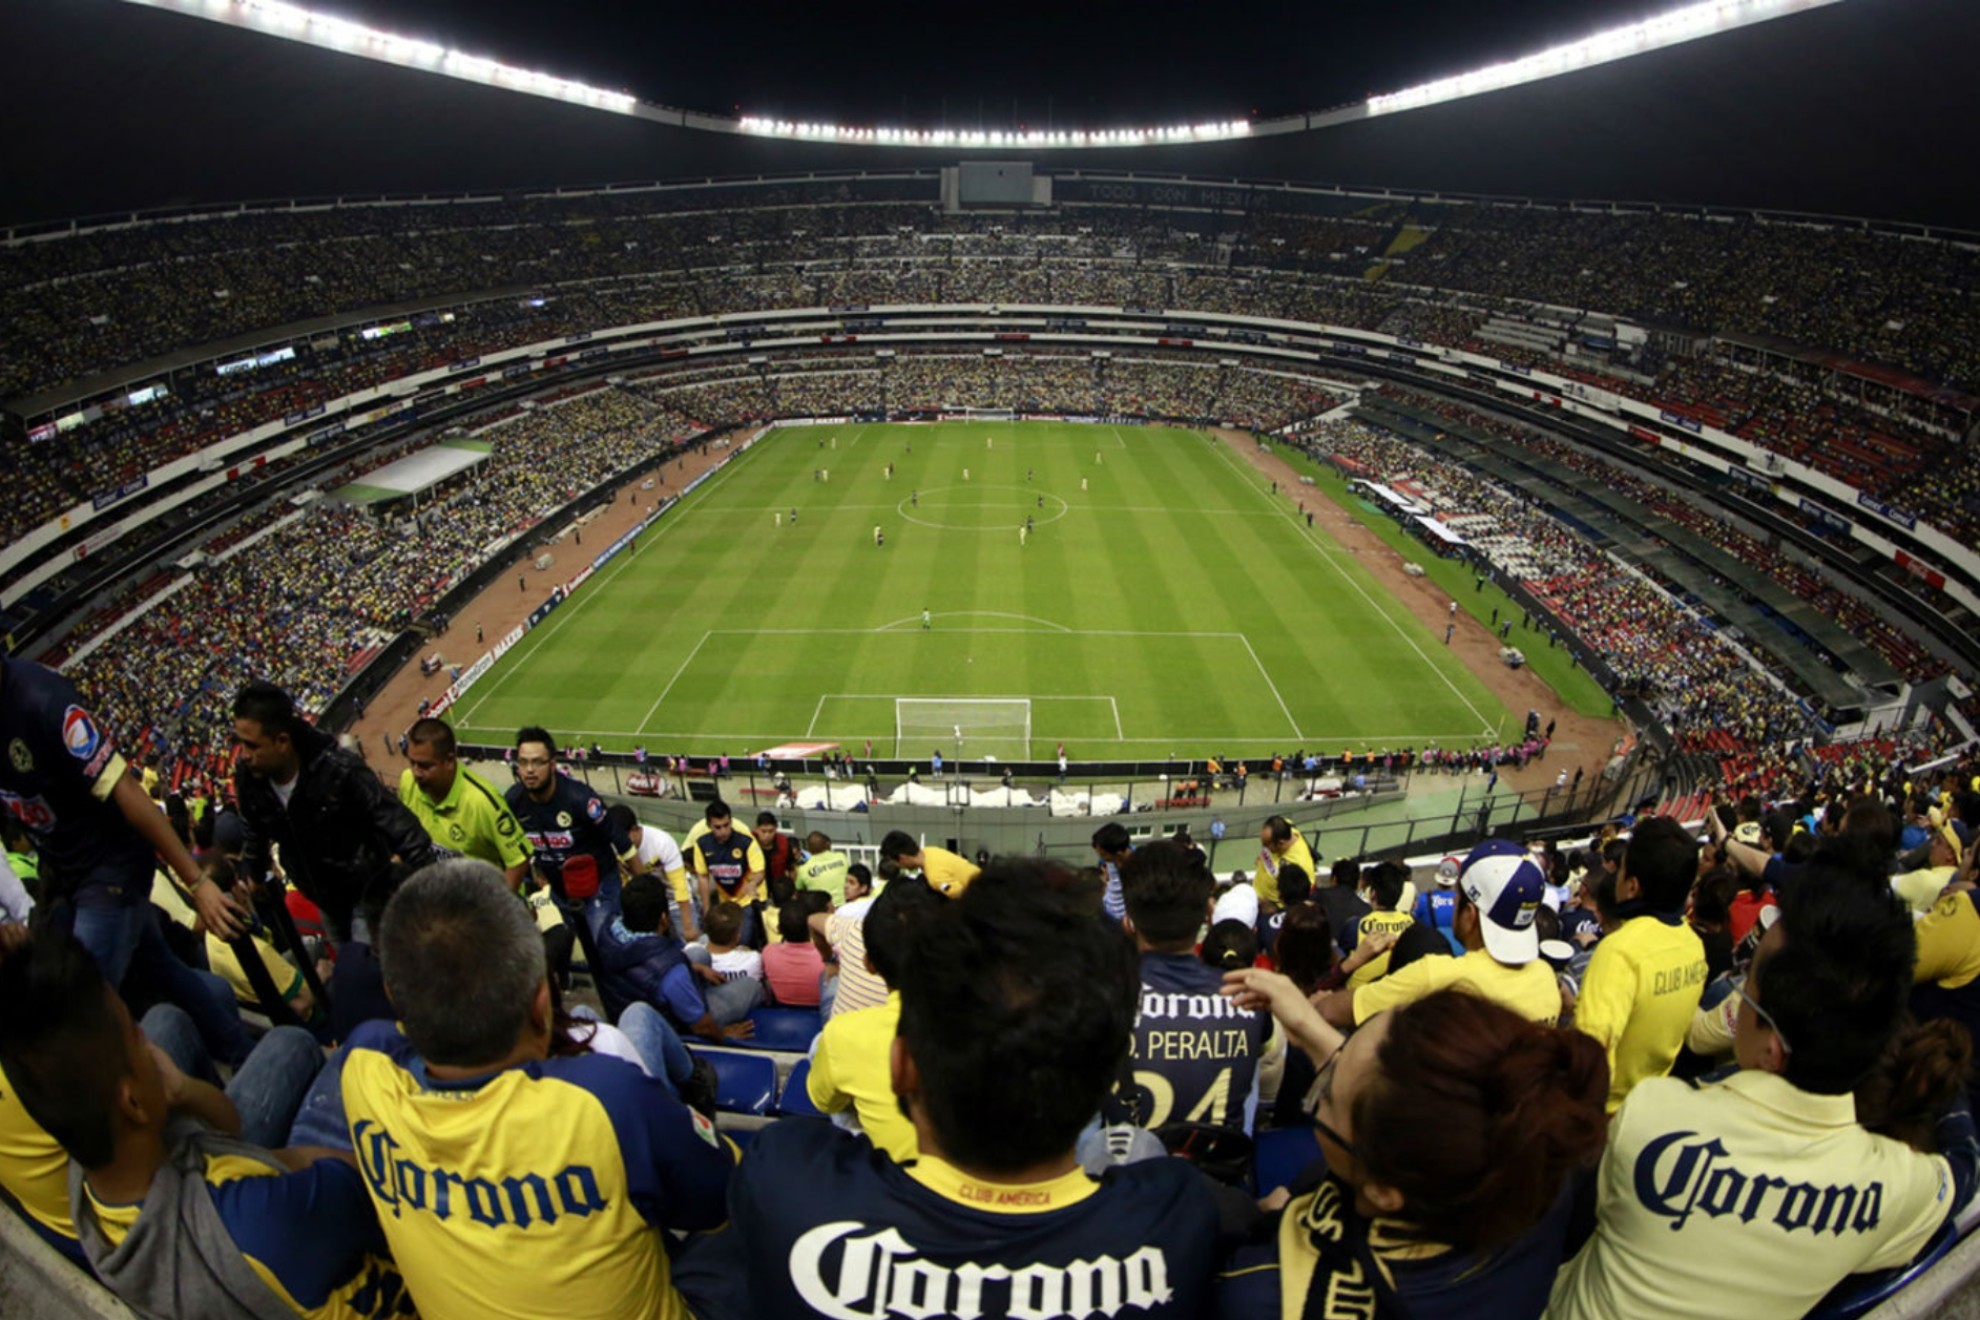 El estadio Azteca es uno de los escenarios deportivos ms importantes del mundo.